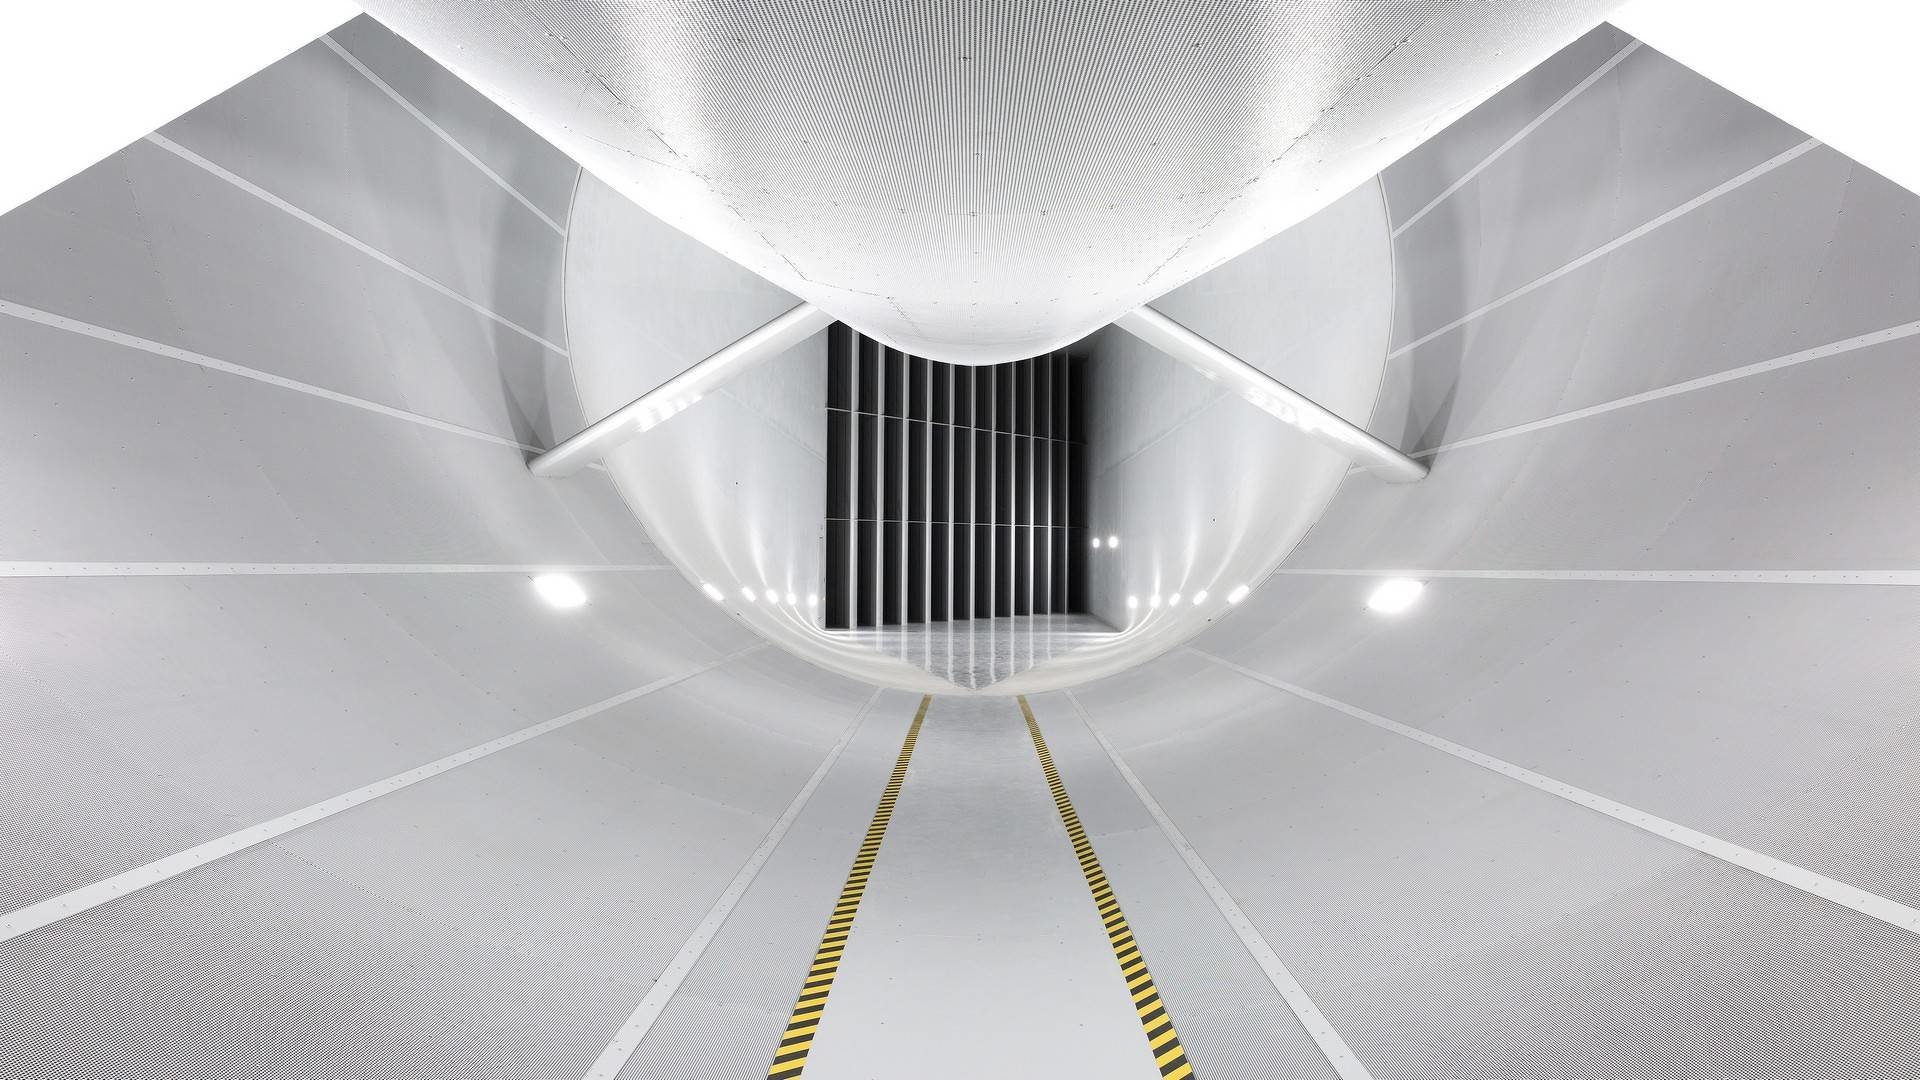 Volkswagen vybudoval nový větrný tunel v hodnotě 2,5 miliardy korun